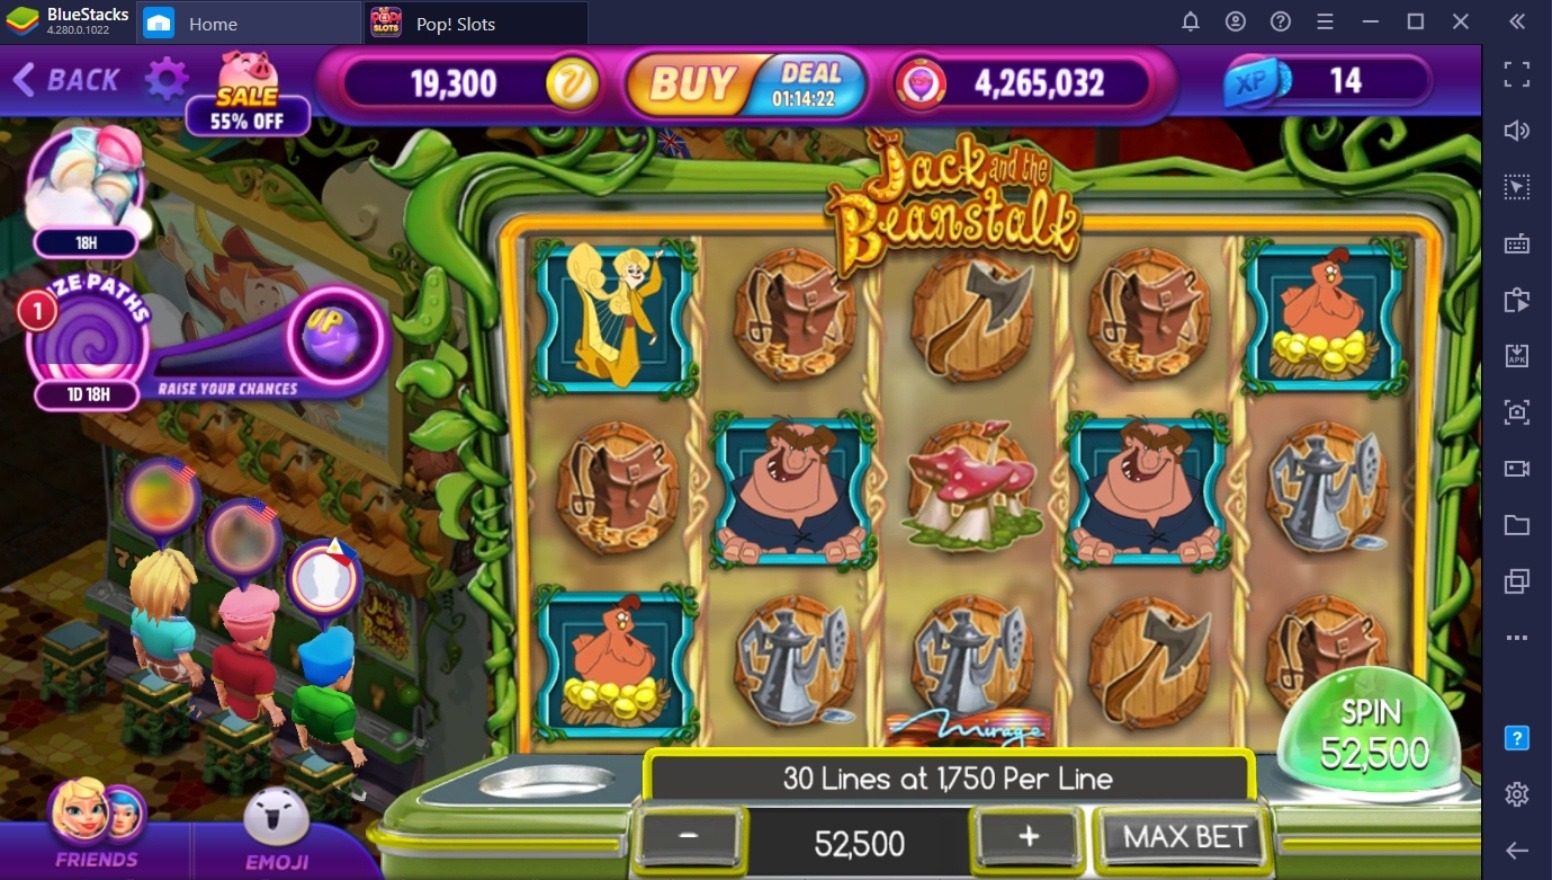 POP! Slots Vegas Casino Games: Mẹo hay giúp bạn thắng lớn khi chơi trên PC với BlueStacks